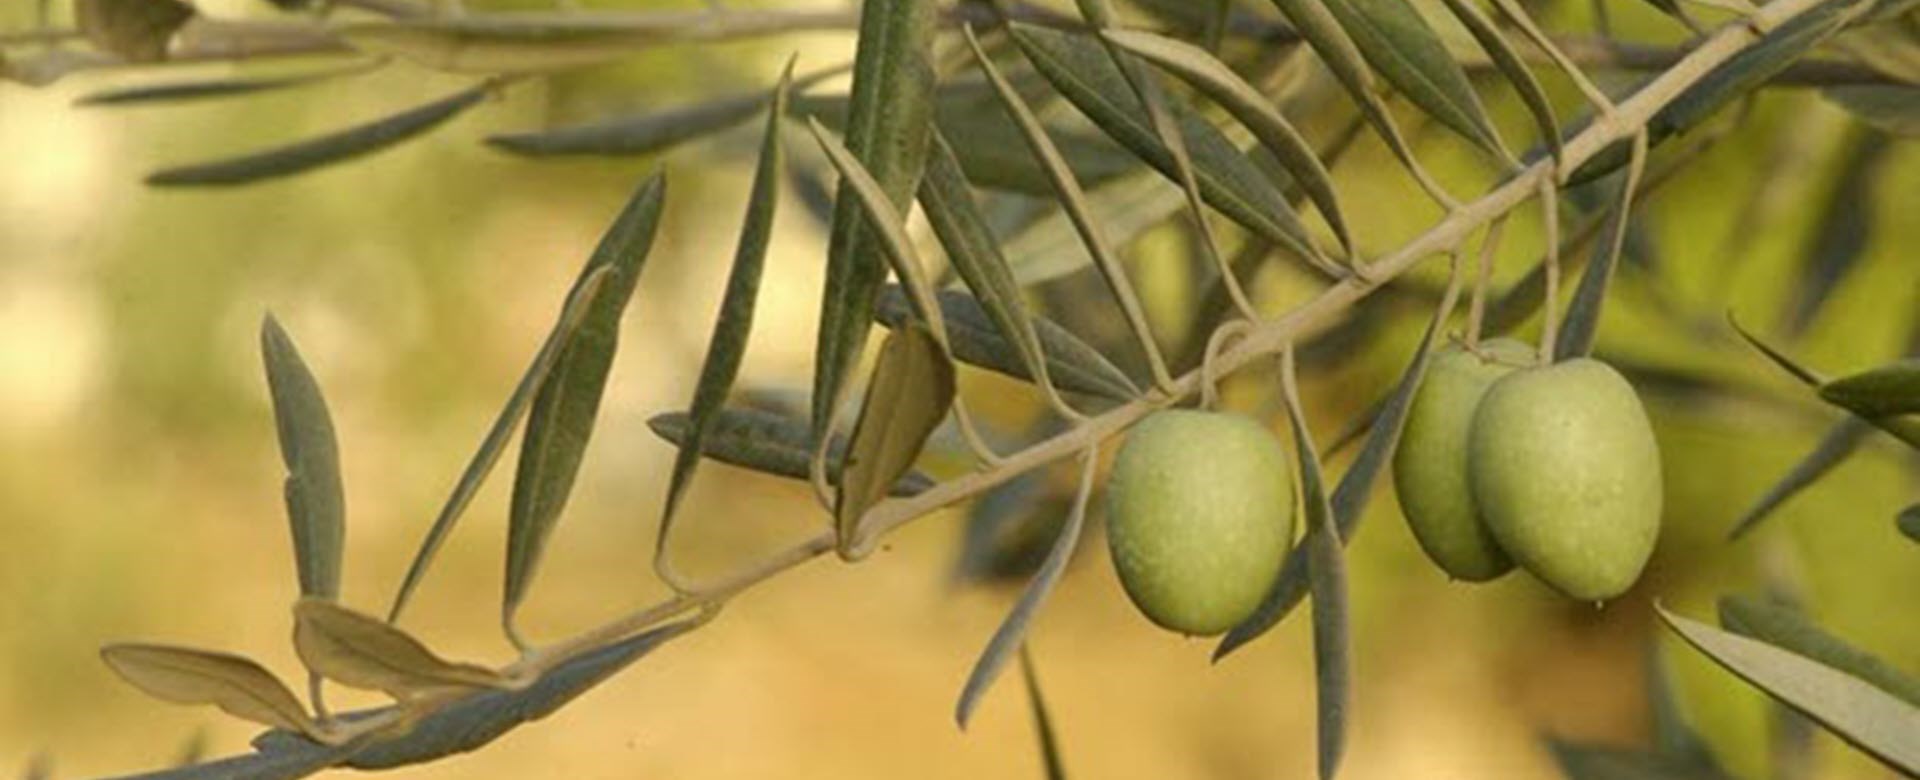 טיפול עץ הזית מבית “אמירי הגליל”